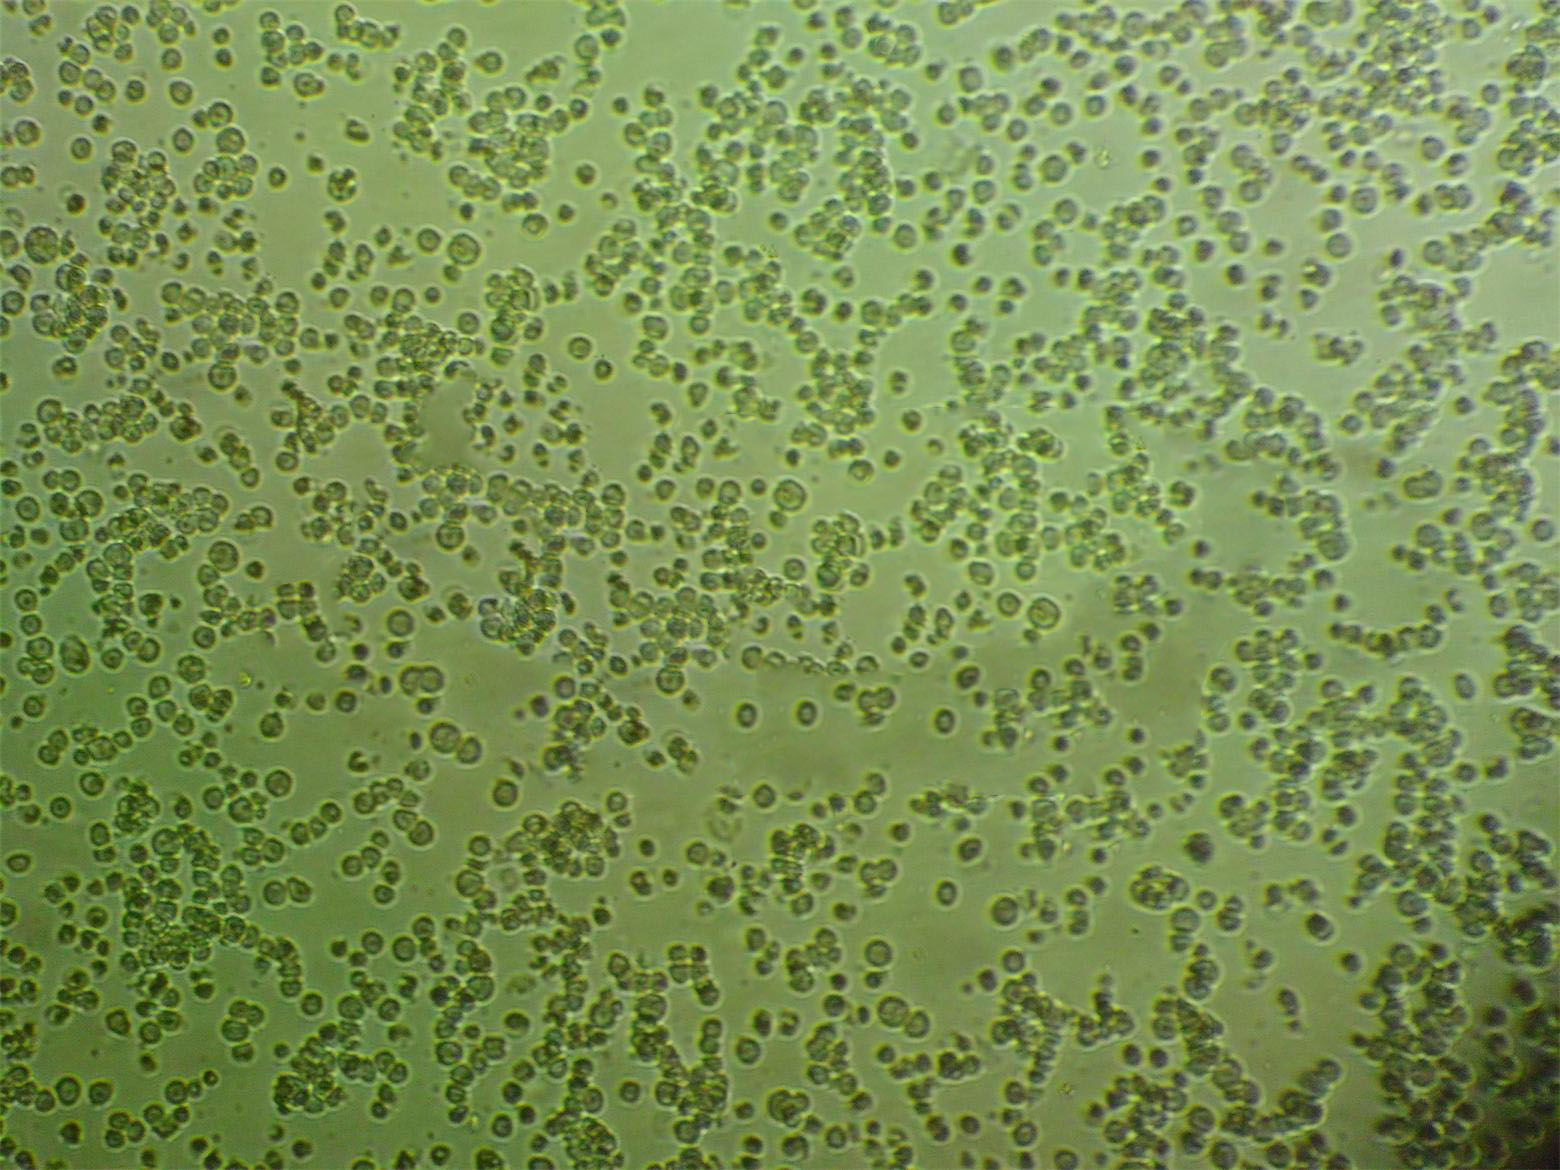 SU-DHL-5 Cells|人弥漫大D可传代细胞系,SU-DHL-5 Cells